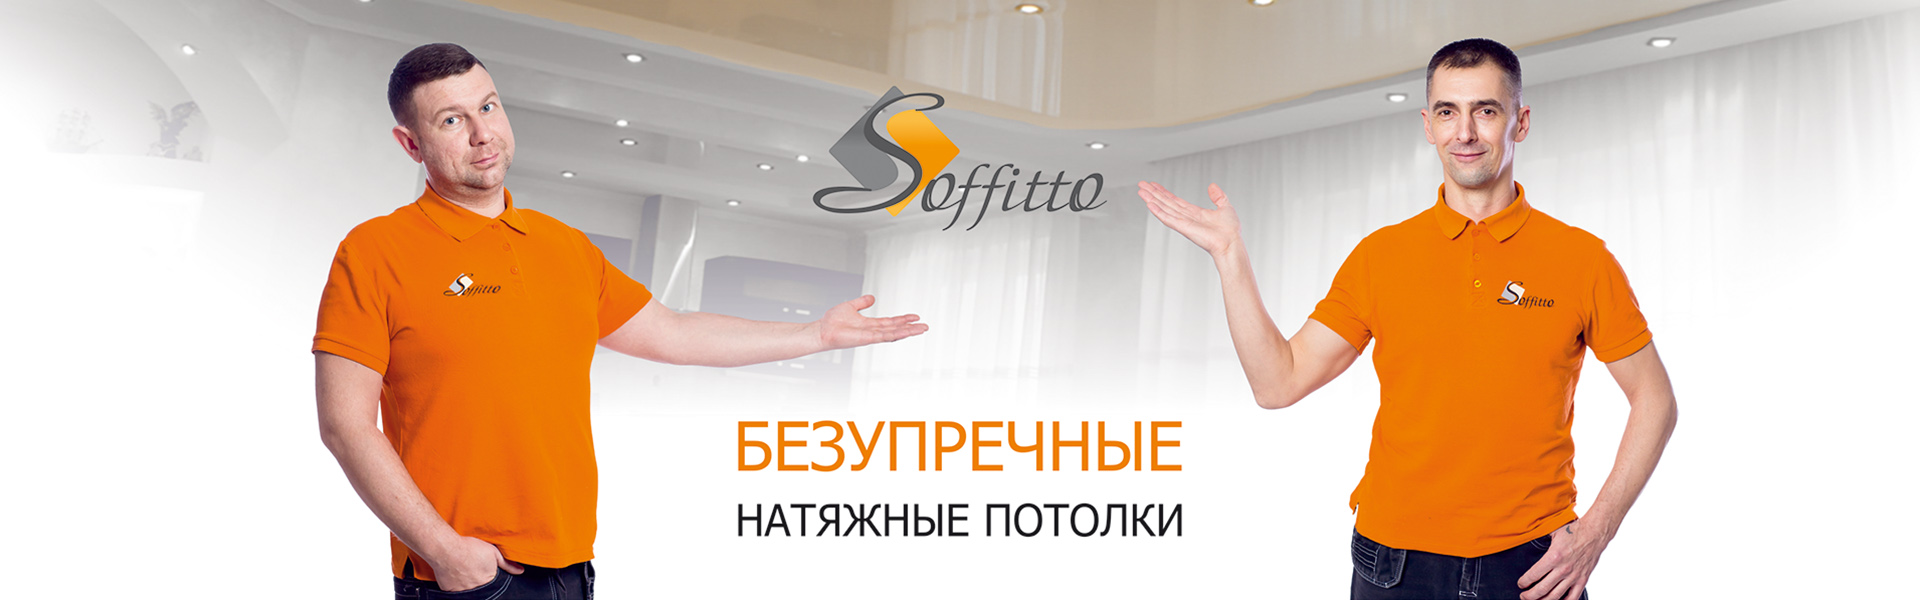 Soffitto - это безупречные потолки в вашем доме! Установка в Калуге и Калужской области